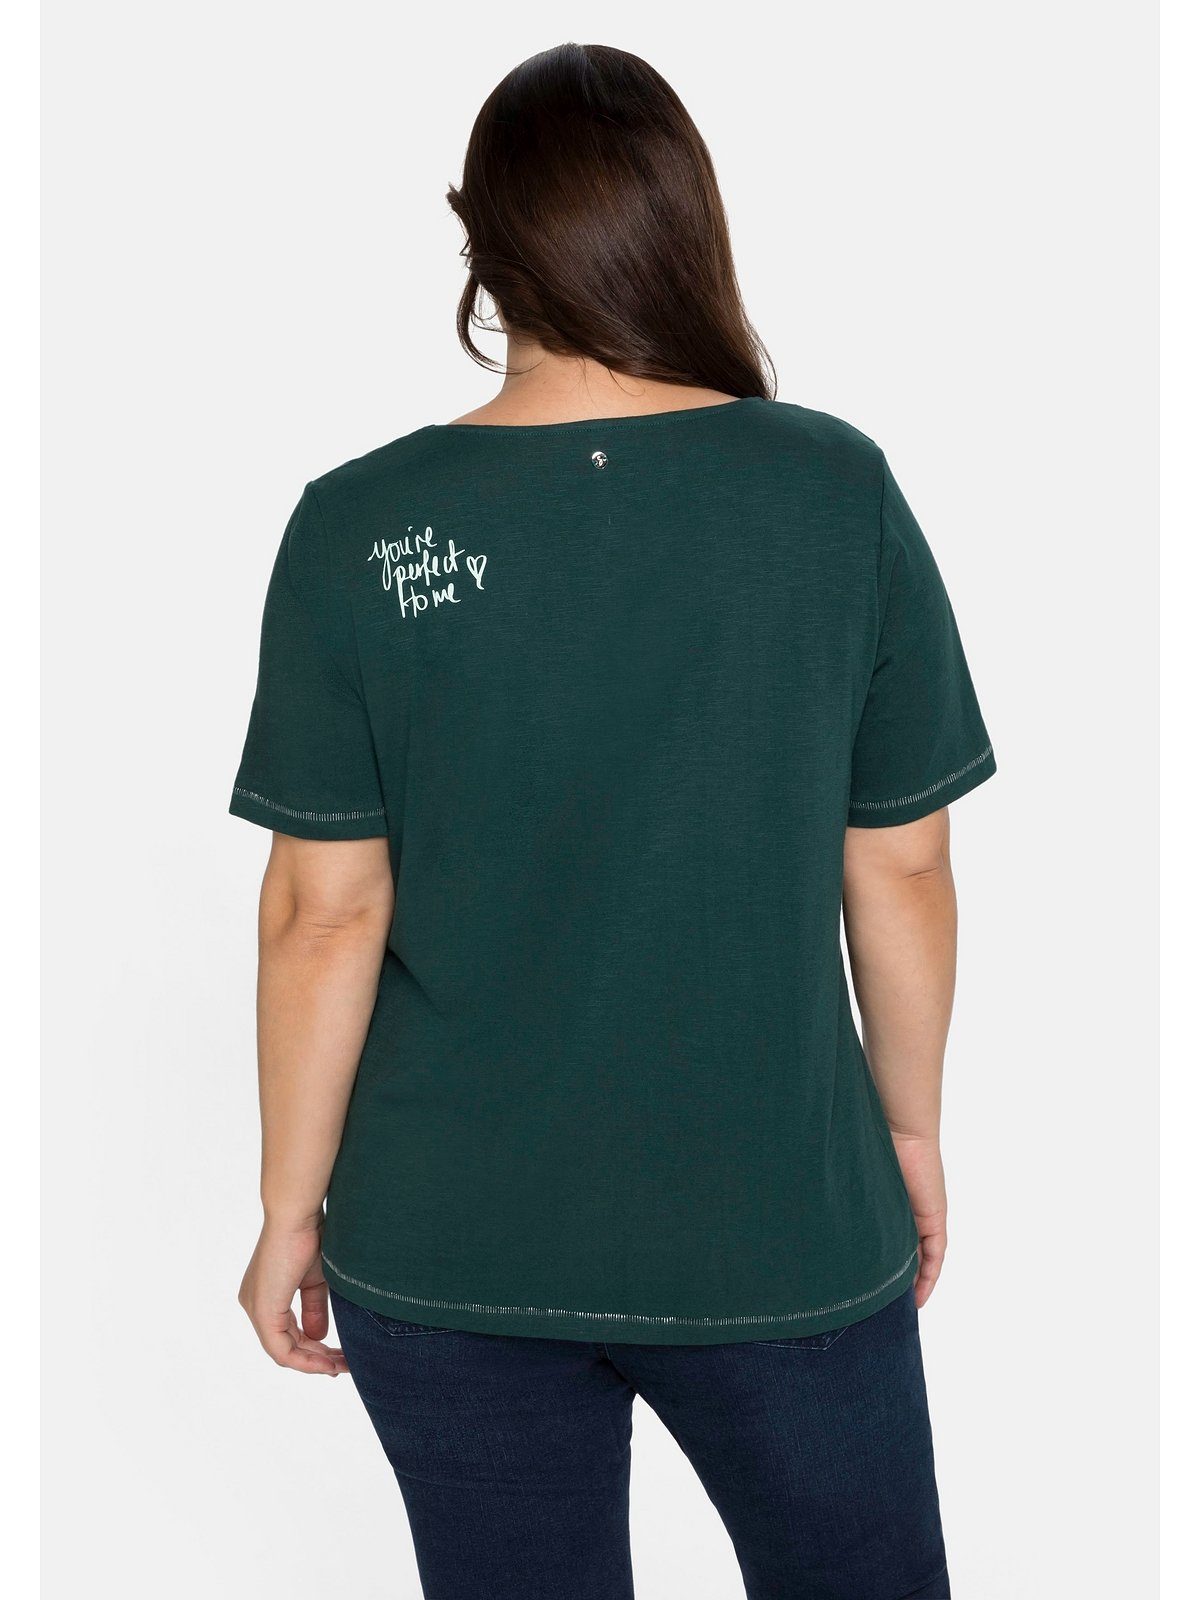 Große Print hinten Schulter auf T-Shirt Sheego Größen mit der tiefgrün